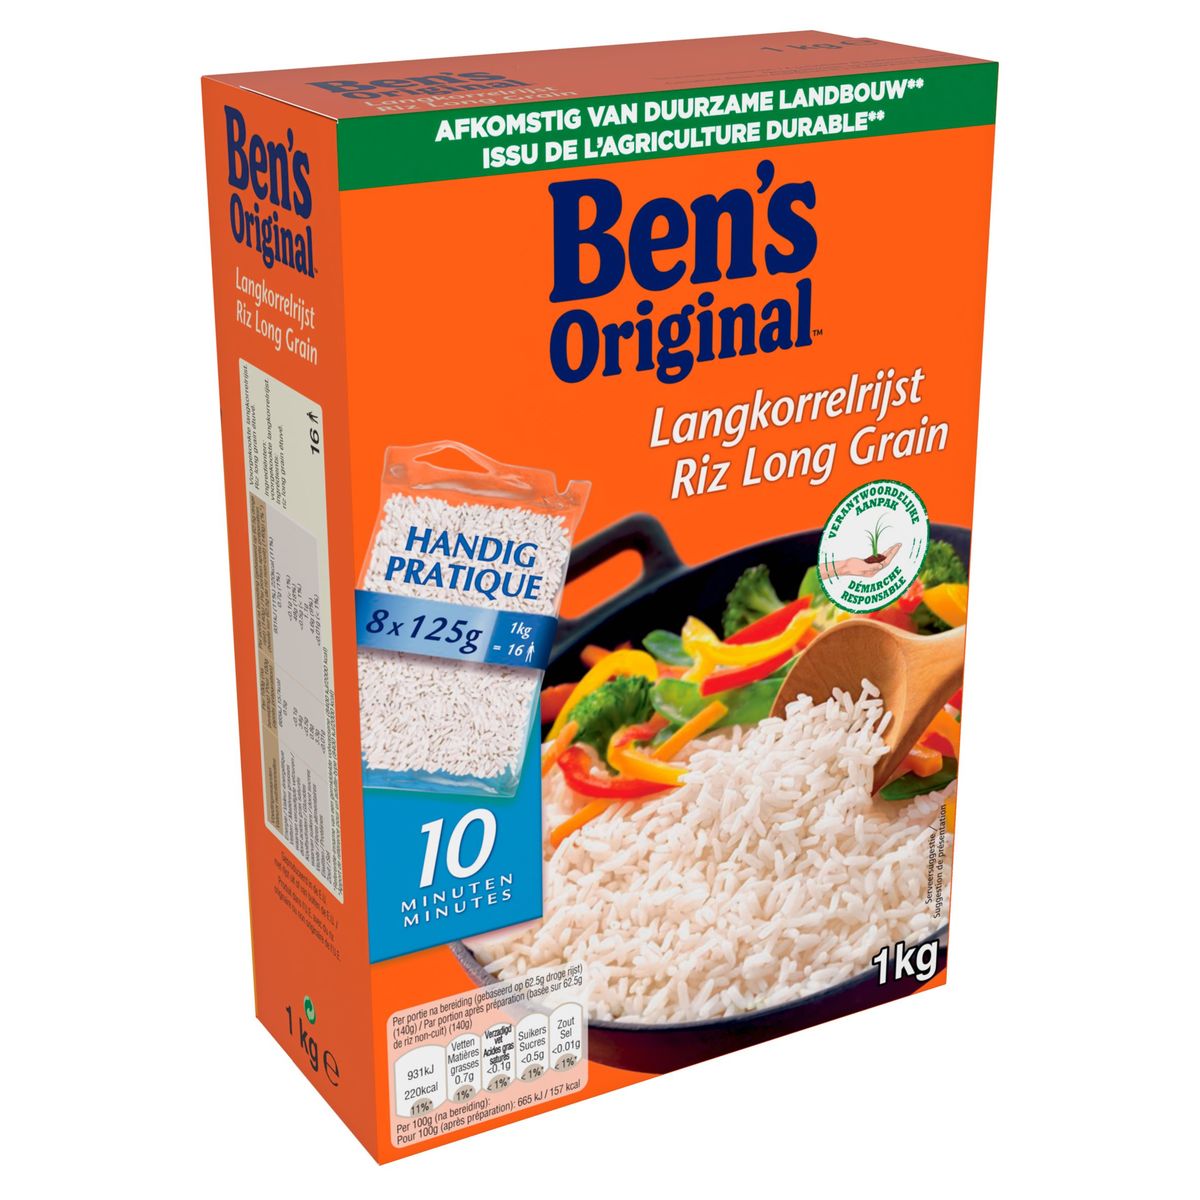 BEN'S ORIGINAL riz complet 4x125g